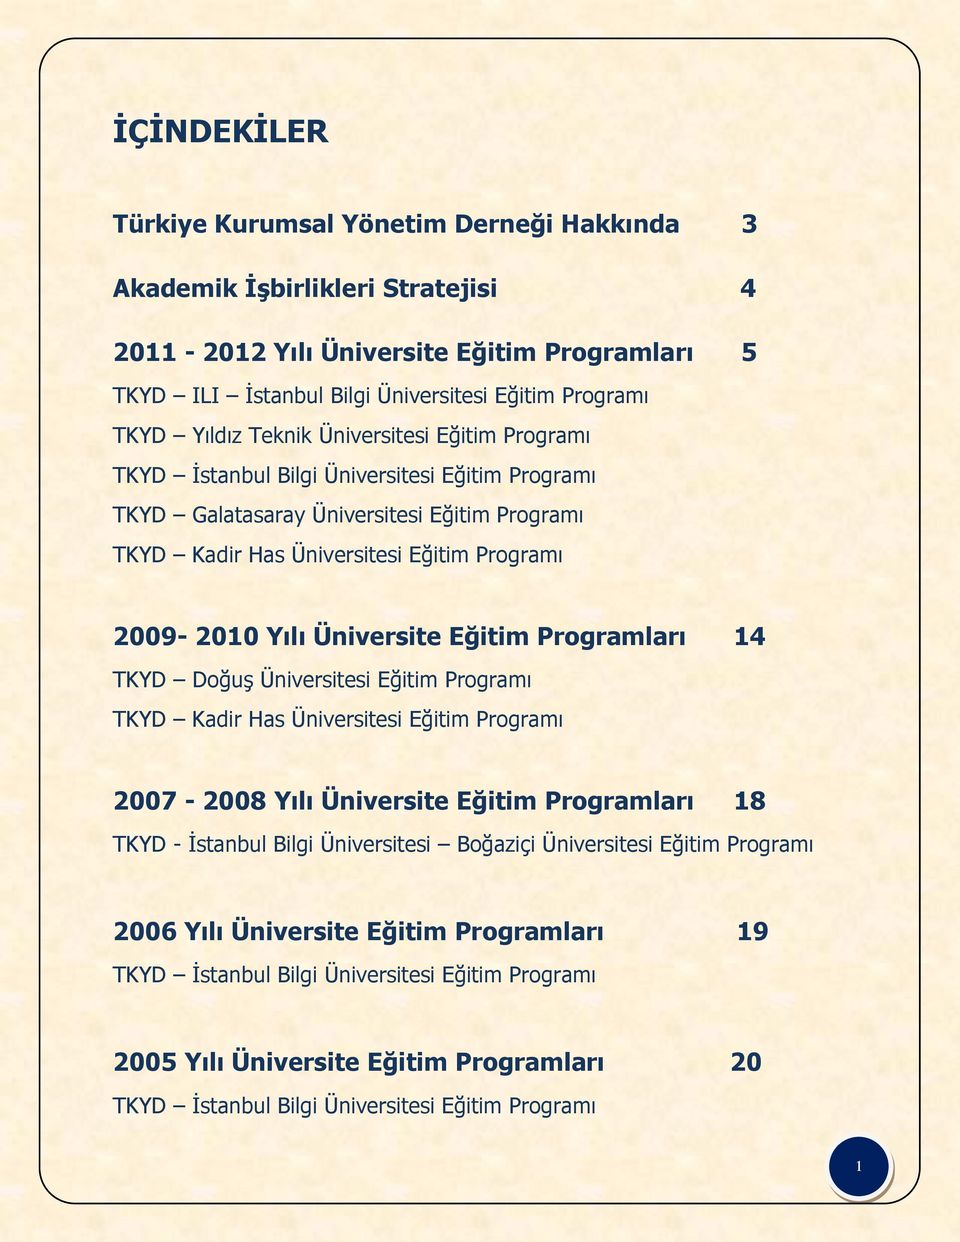 Üniversite Eğitim Programları 14 TKYD Doğuş Üniversitesi Eğitim Programı TKYD Kadir Has Üniversitesi Eğitim Programı 2007-2008 Yılı Üniversite Eğitim Programları 18 TKYD - İstanbul Bilgi Üniversitesi